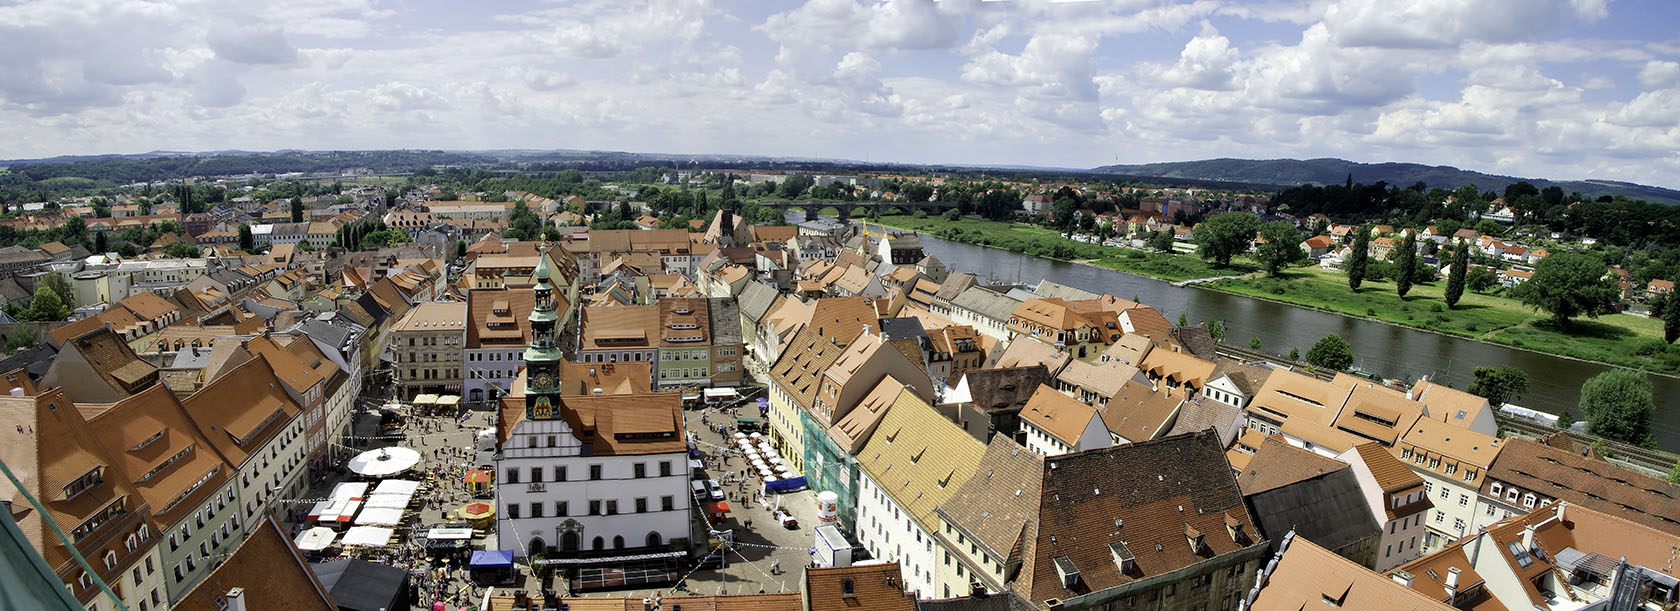 Panoramansicht von Pirna